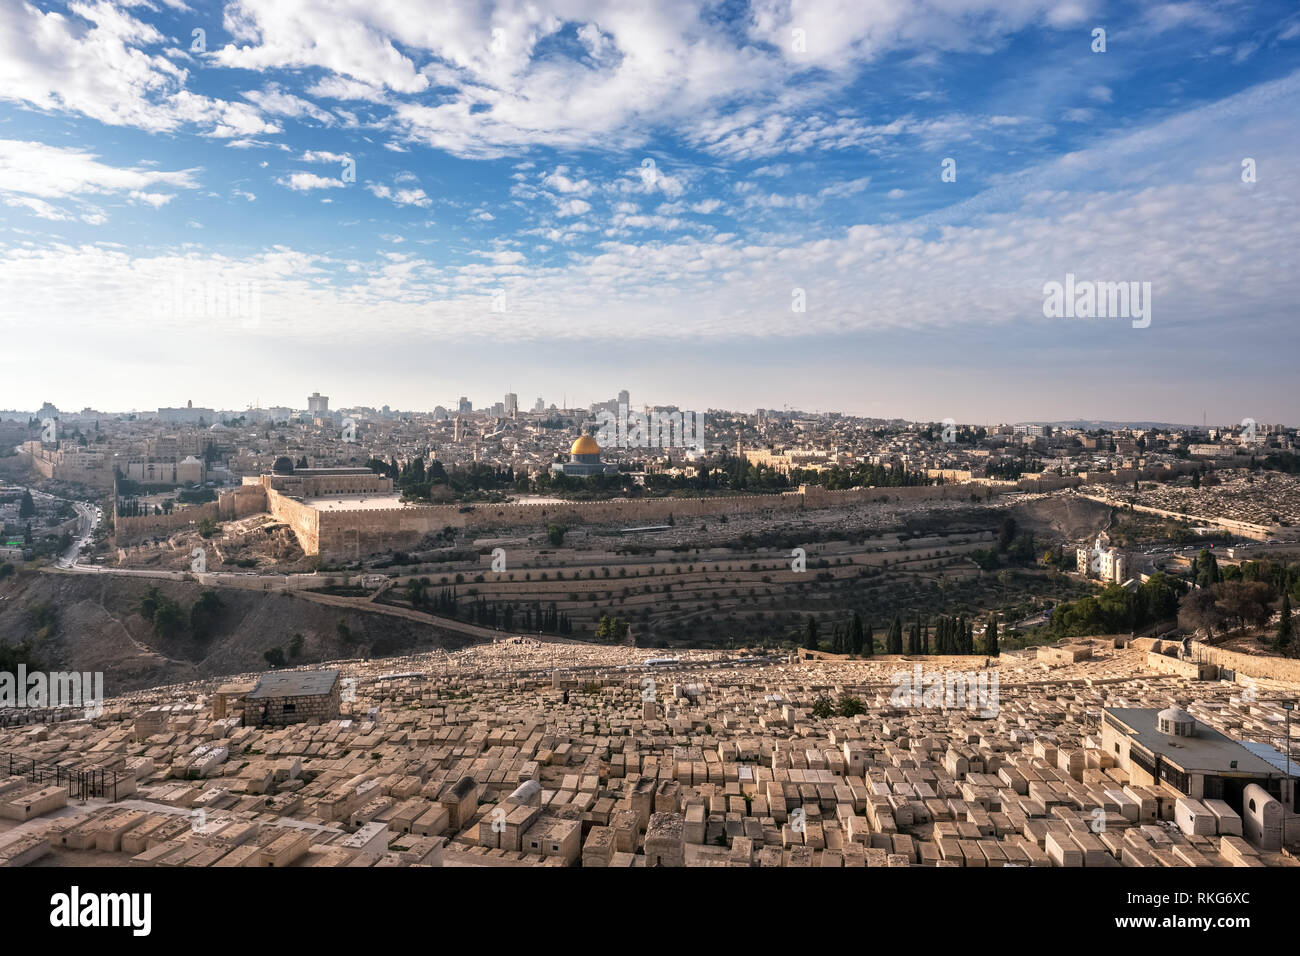 La vue quotidienne de Jérusalem vieille ville du Mont des Oliviers, en Israël Banque D'Images